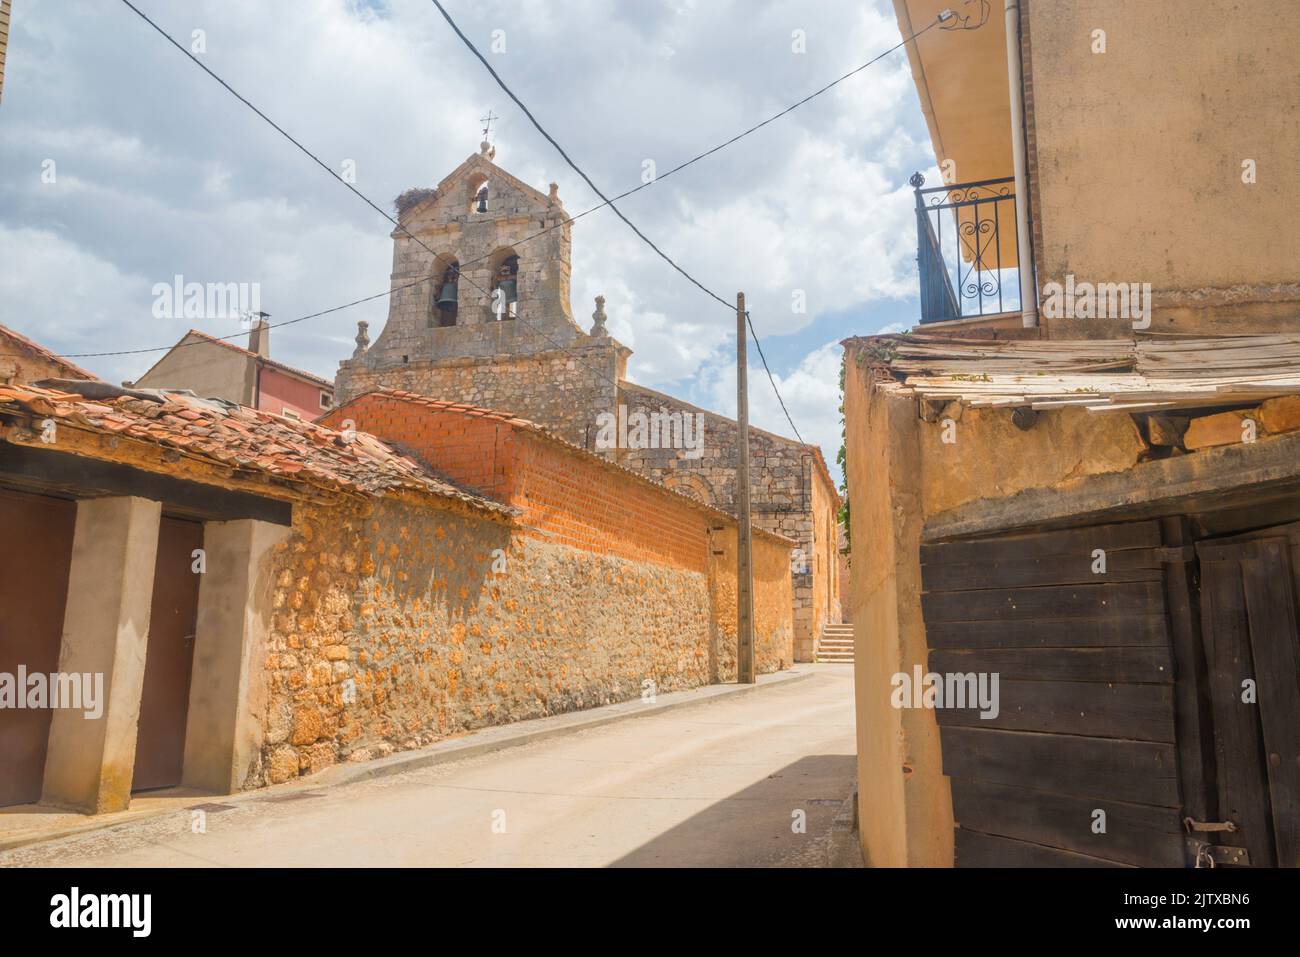 Street and church. Languilla, Segovia province, Castilla Leon, Spain. Stock Photo